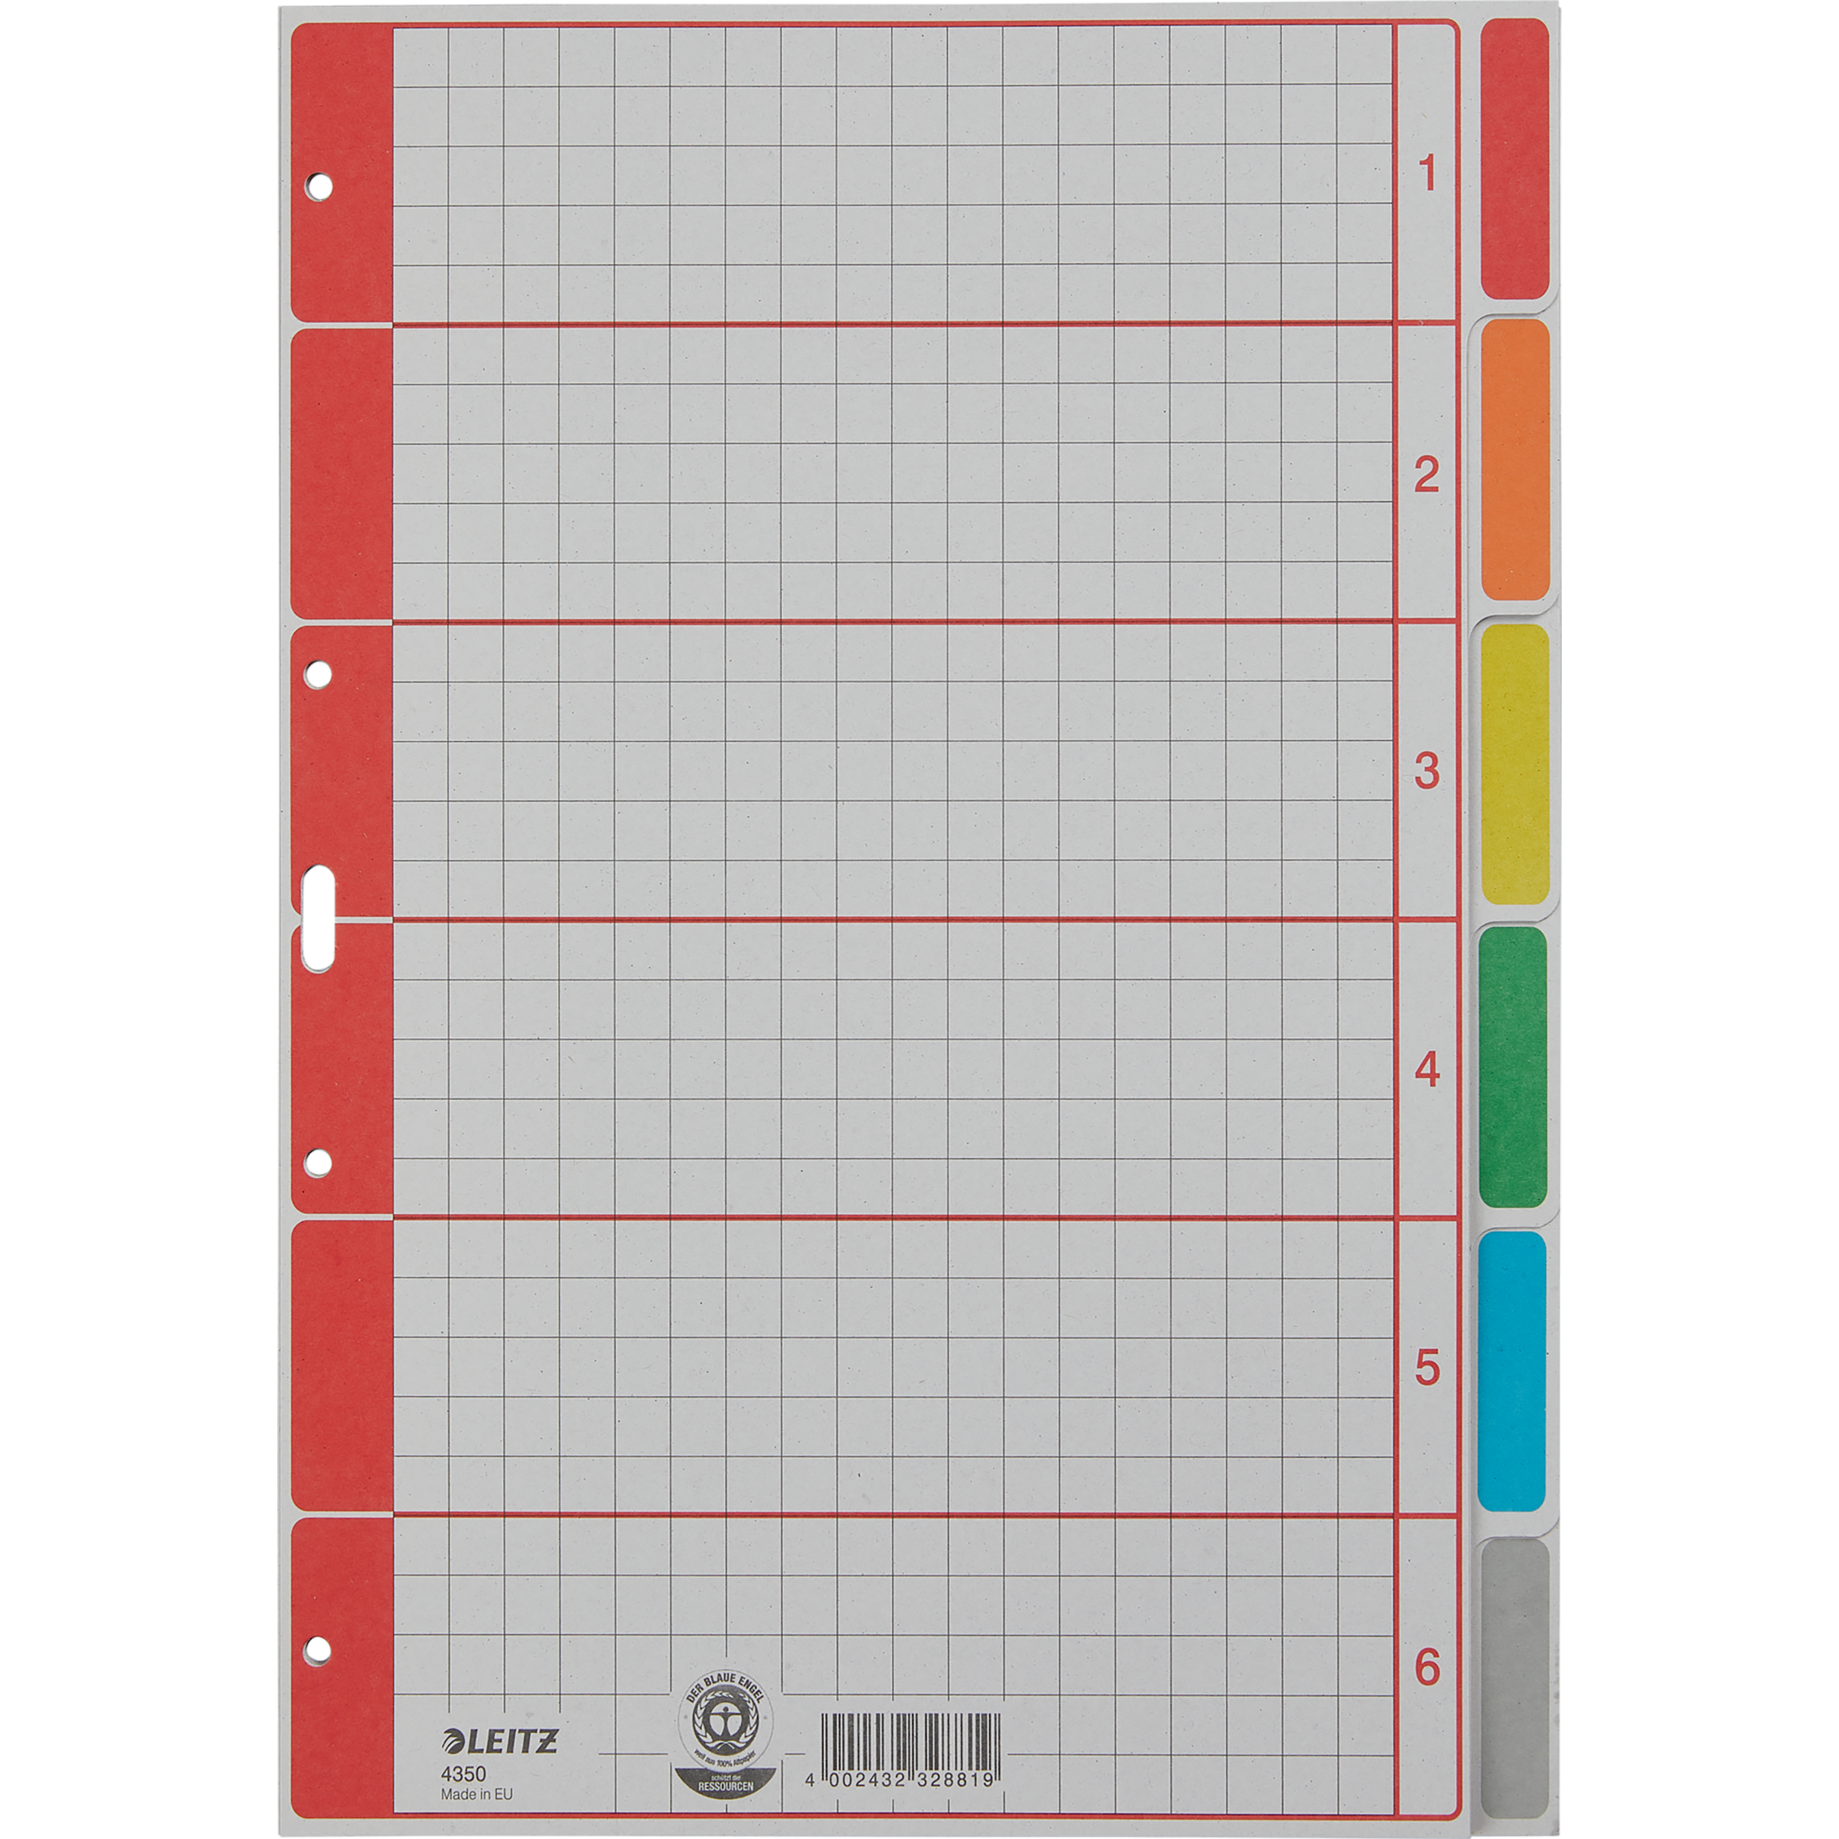 Blanko-Register aus Karton, farbig bedruckt